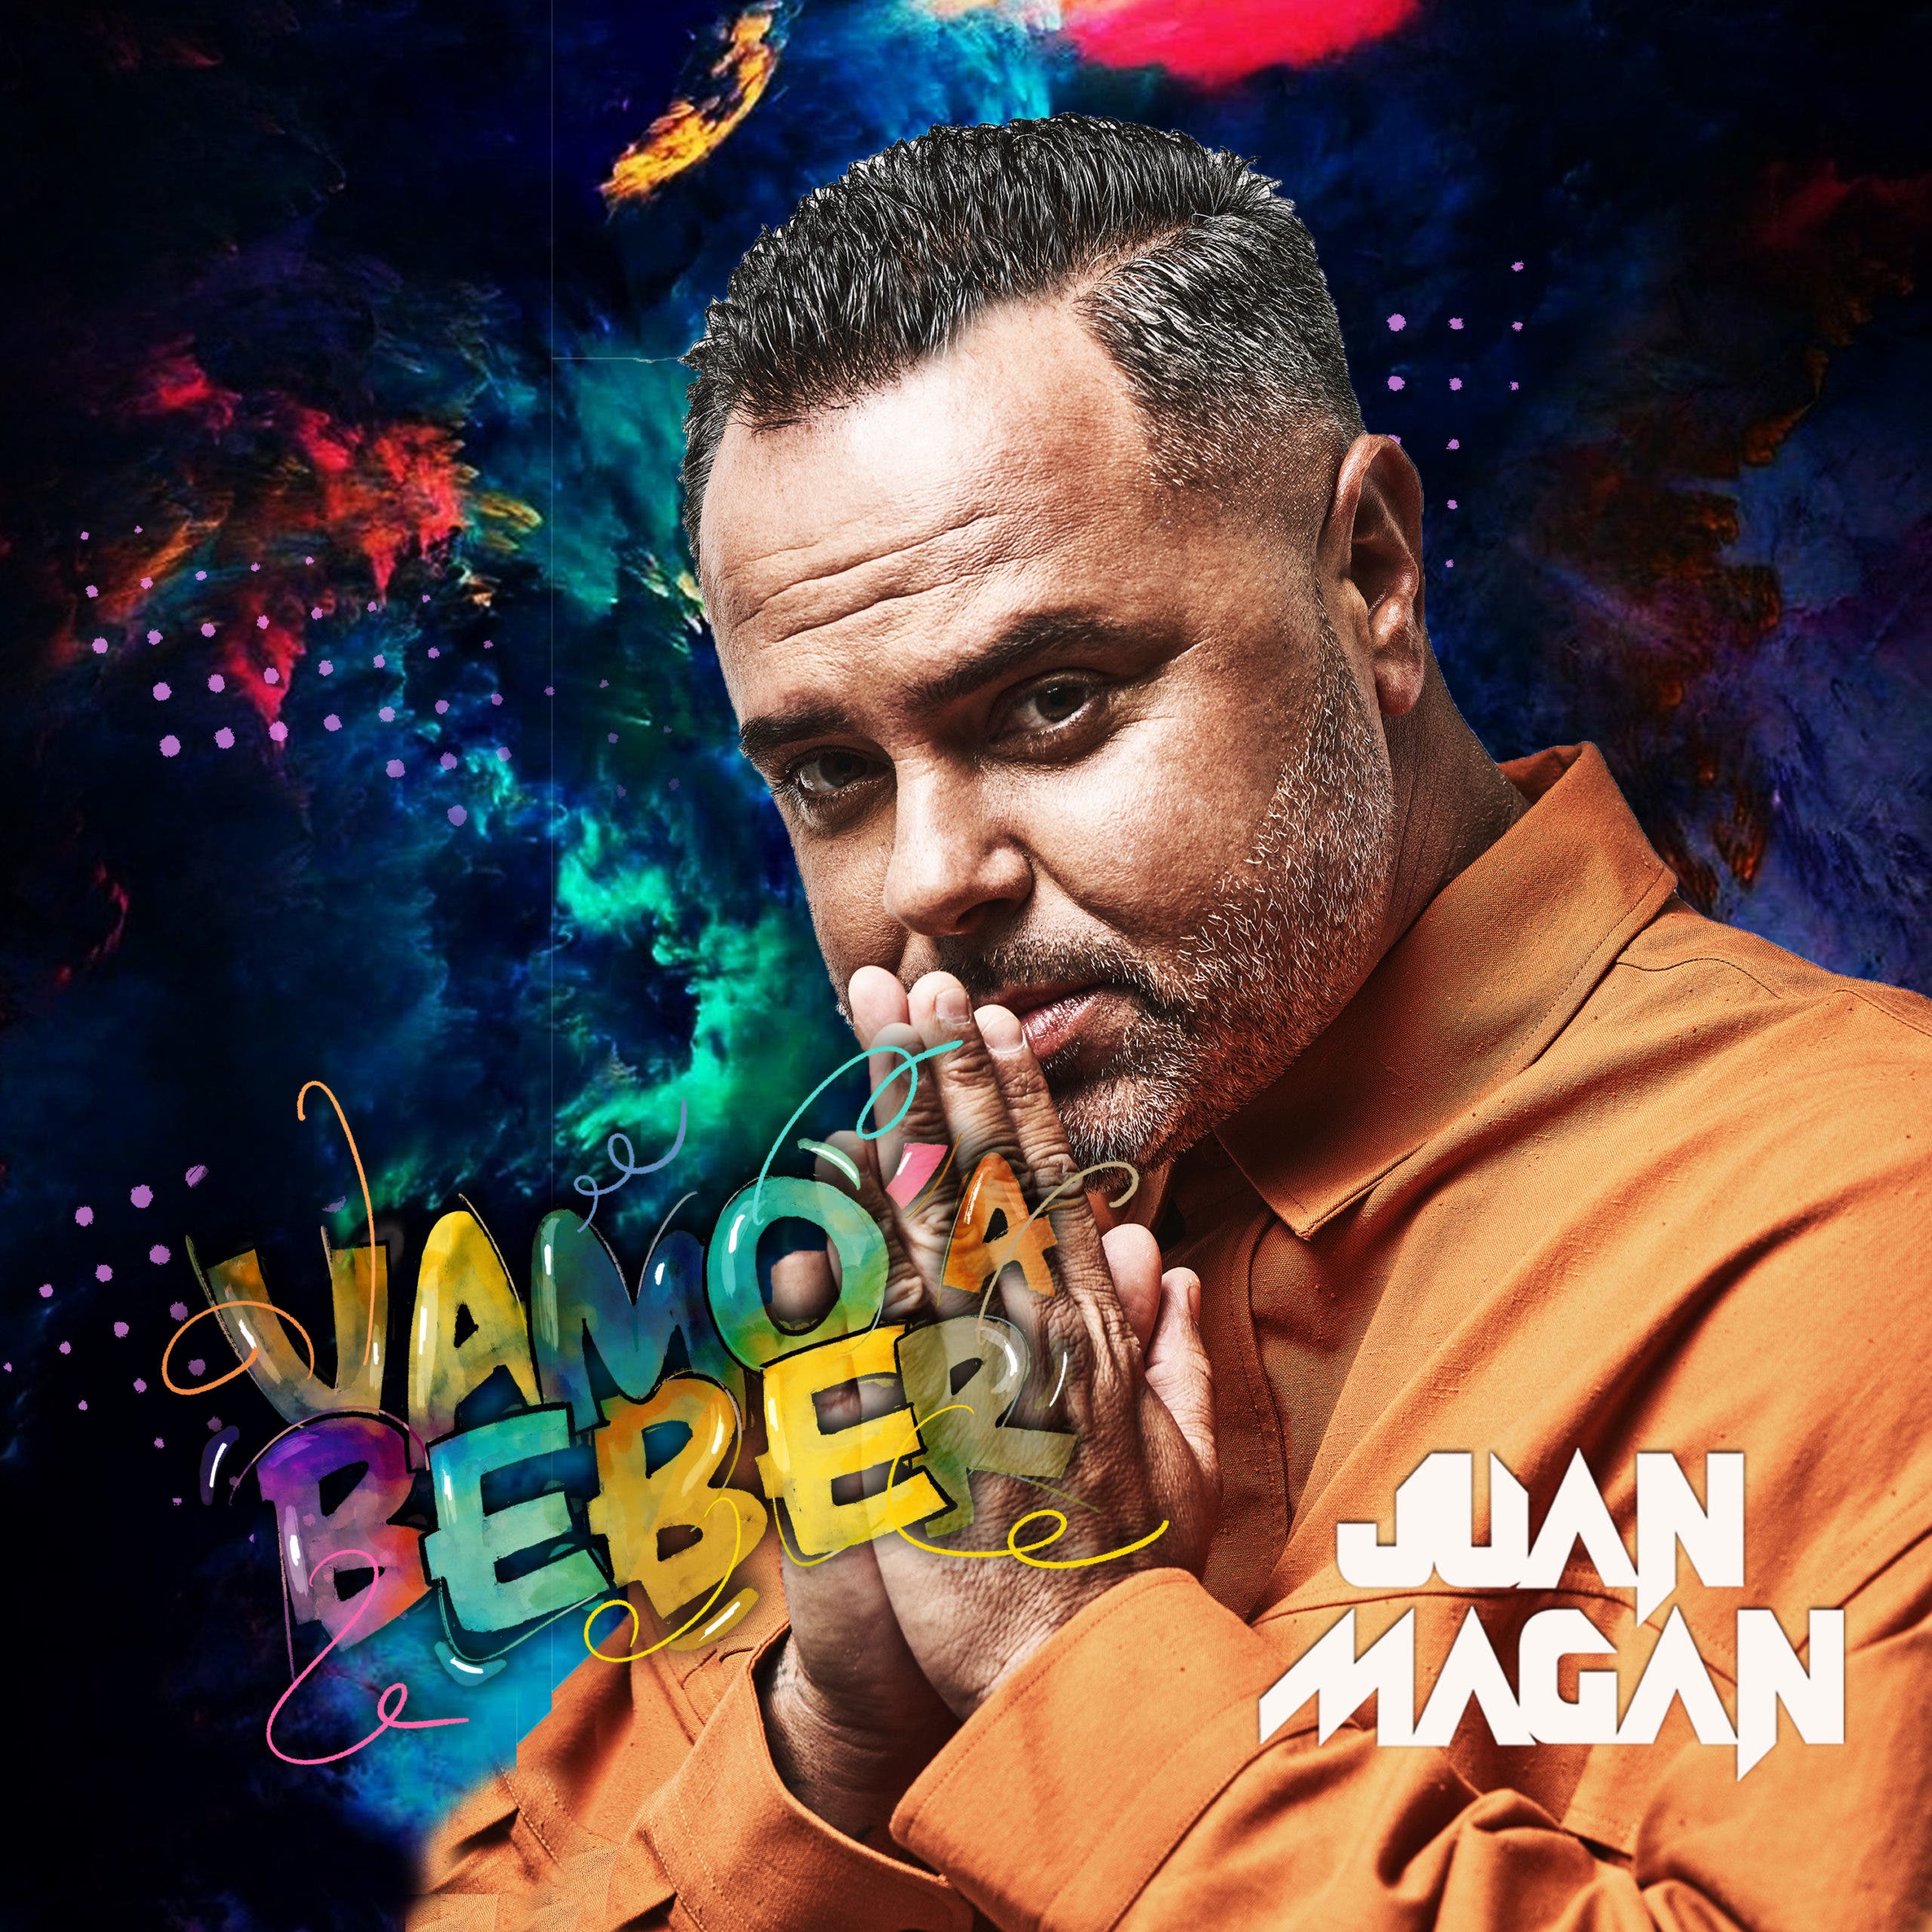 Juan Magán estrena nuevo sencillo “Vamo’ a beber”